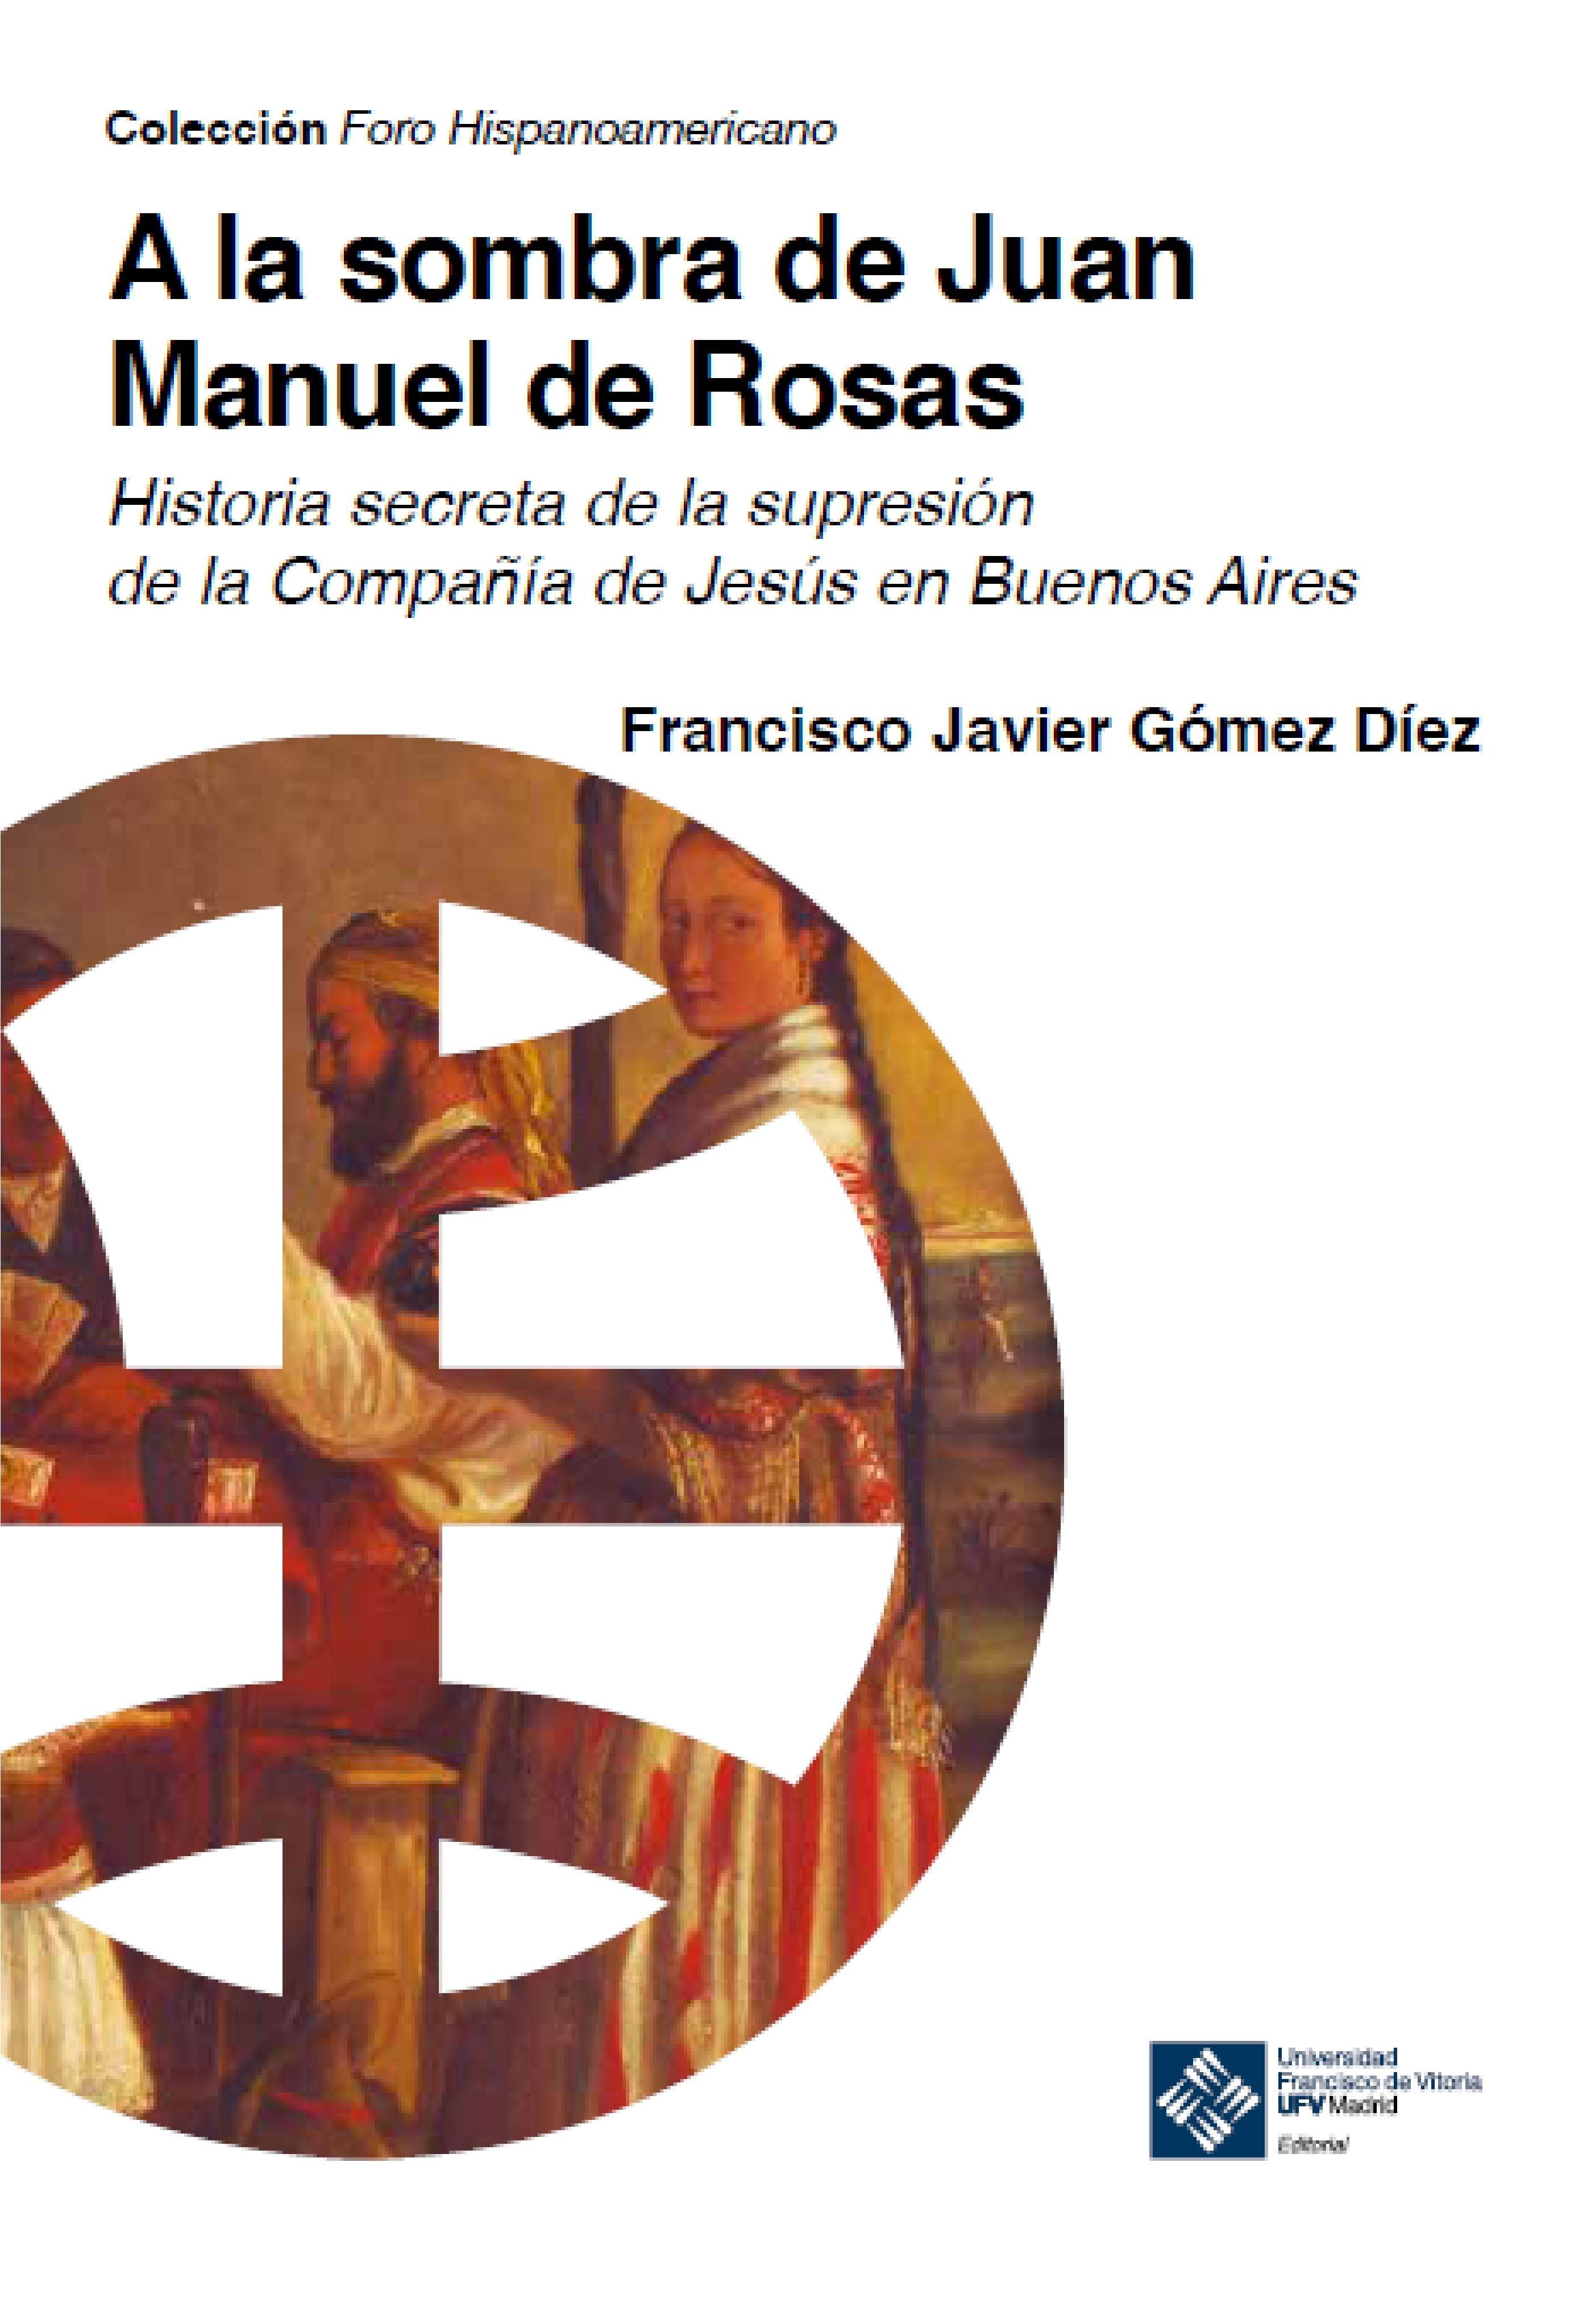 A la sombra de Juan Manuel de Rosas "Historia secreta de la supresión de la Compañía de Jesús en Buenos Aires"